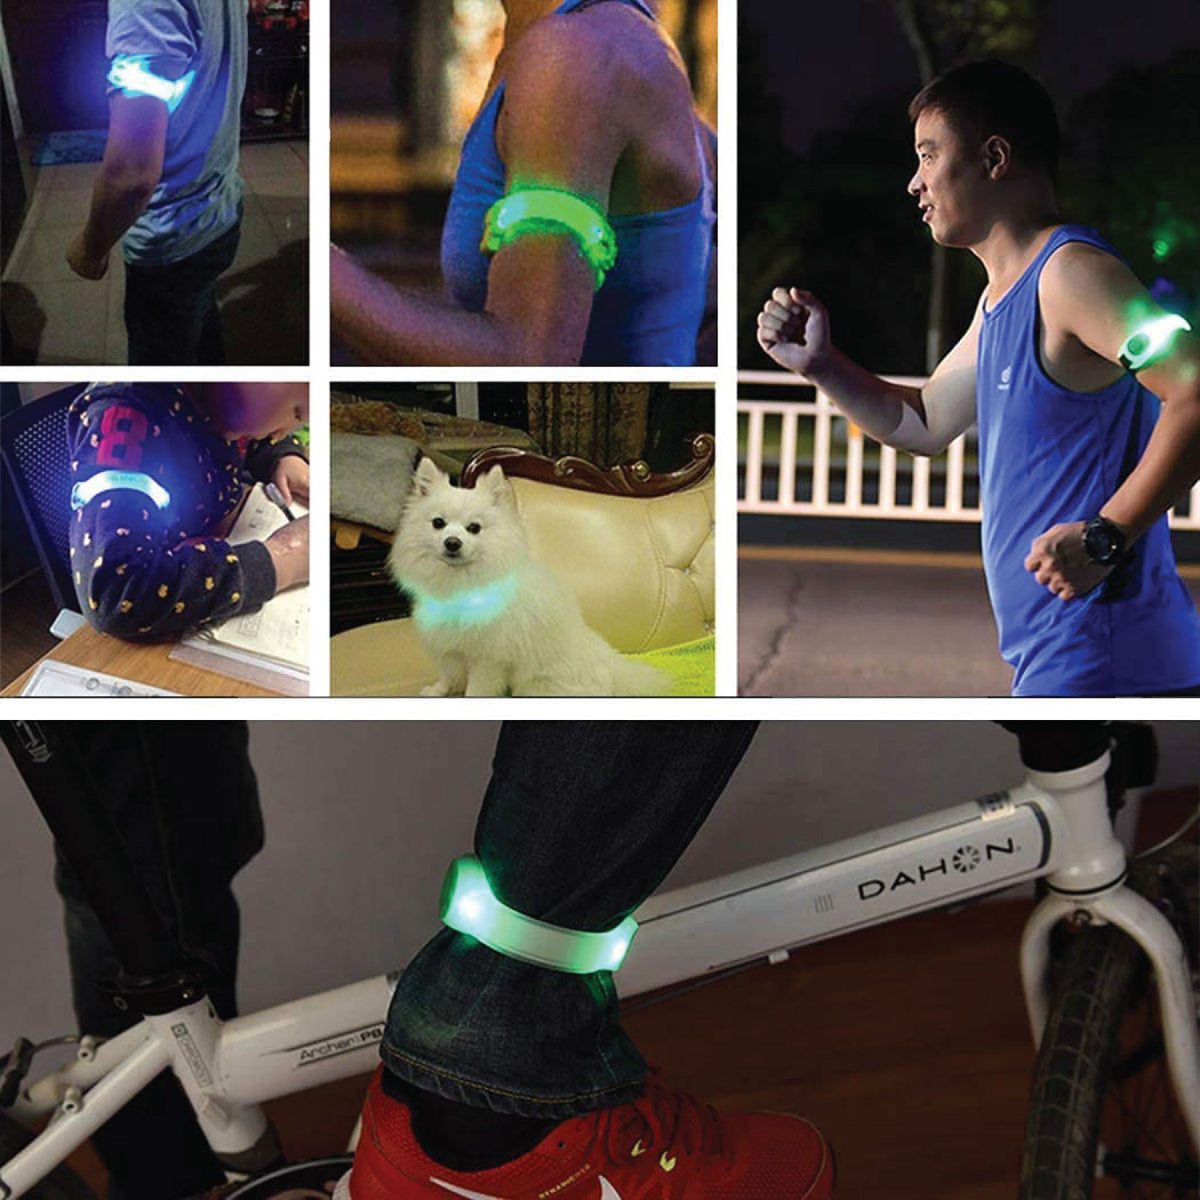 armband light for runners